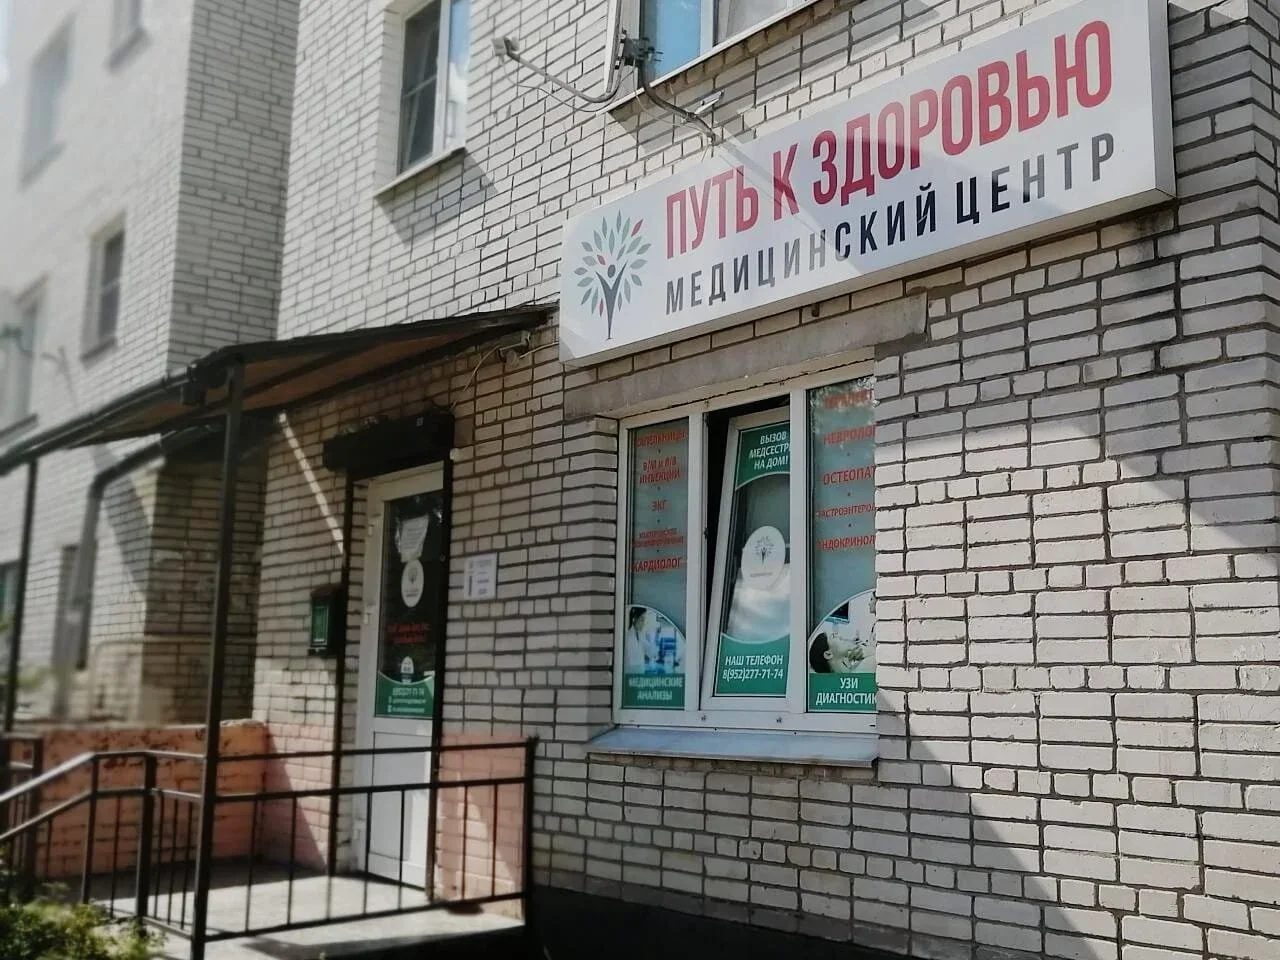 Путь к Здоровью в Ульяновке